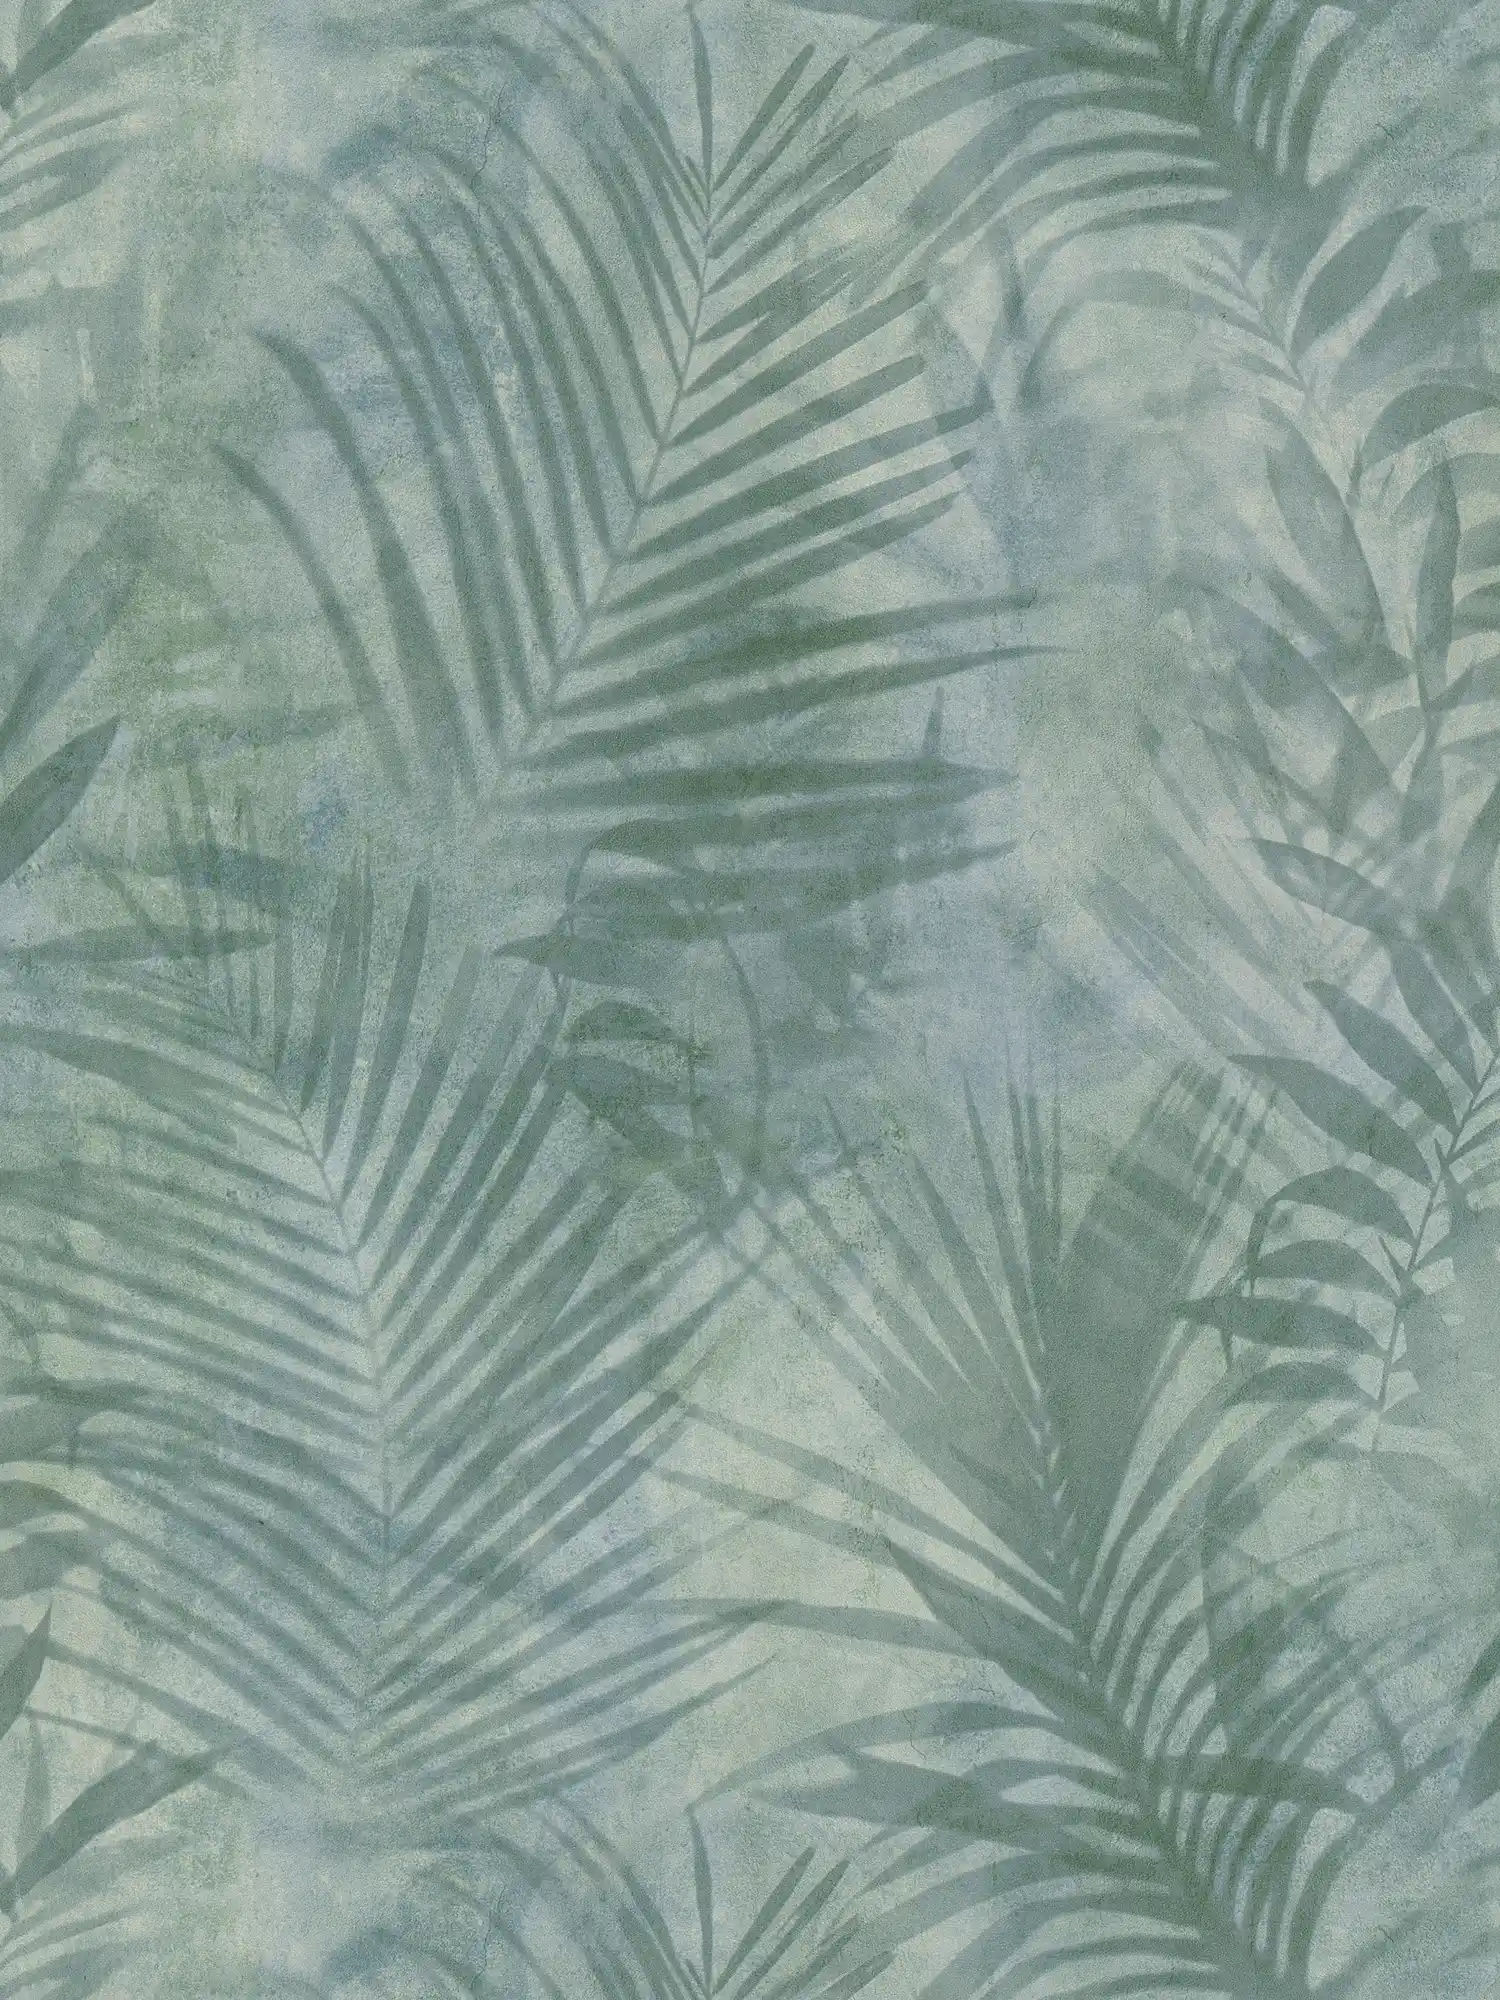 Wallpaper palm tree pattern in linen look - green, blue, grey
